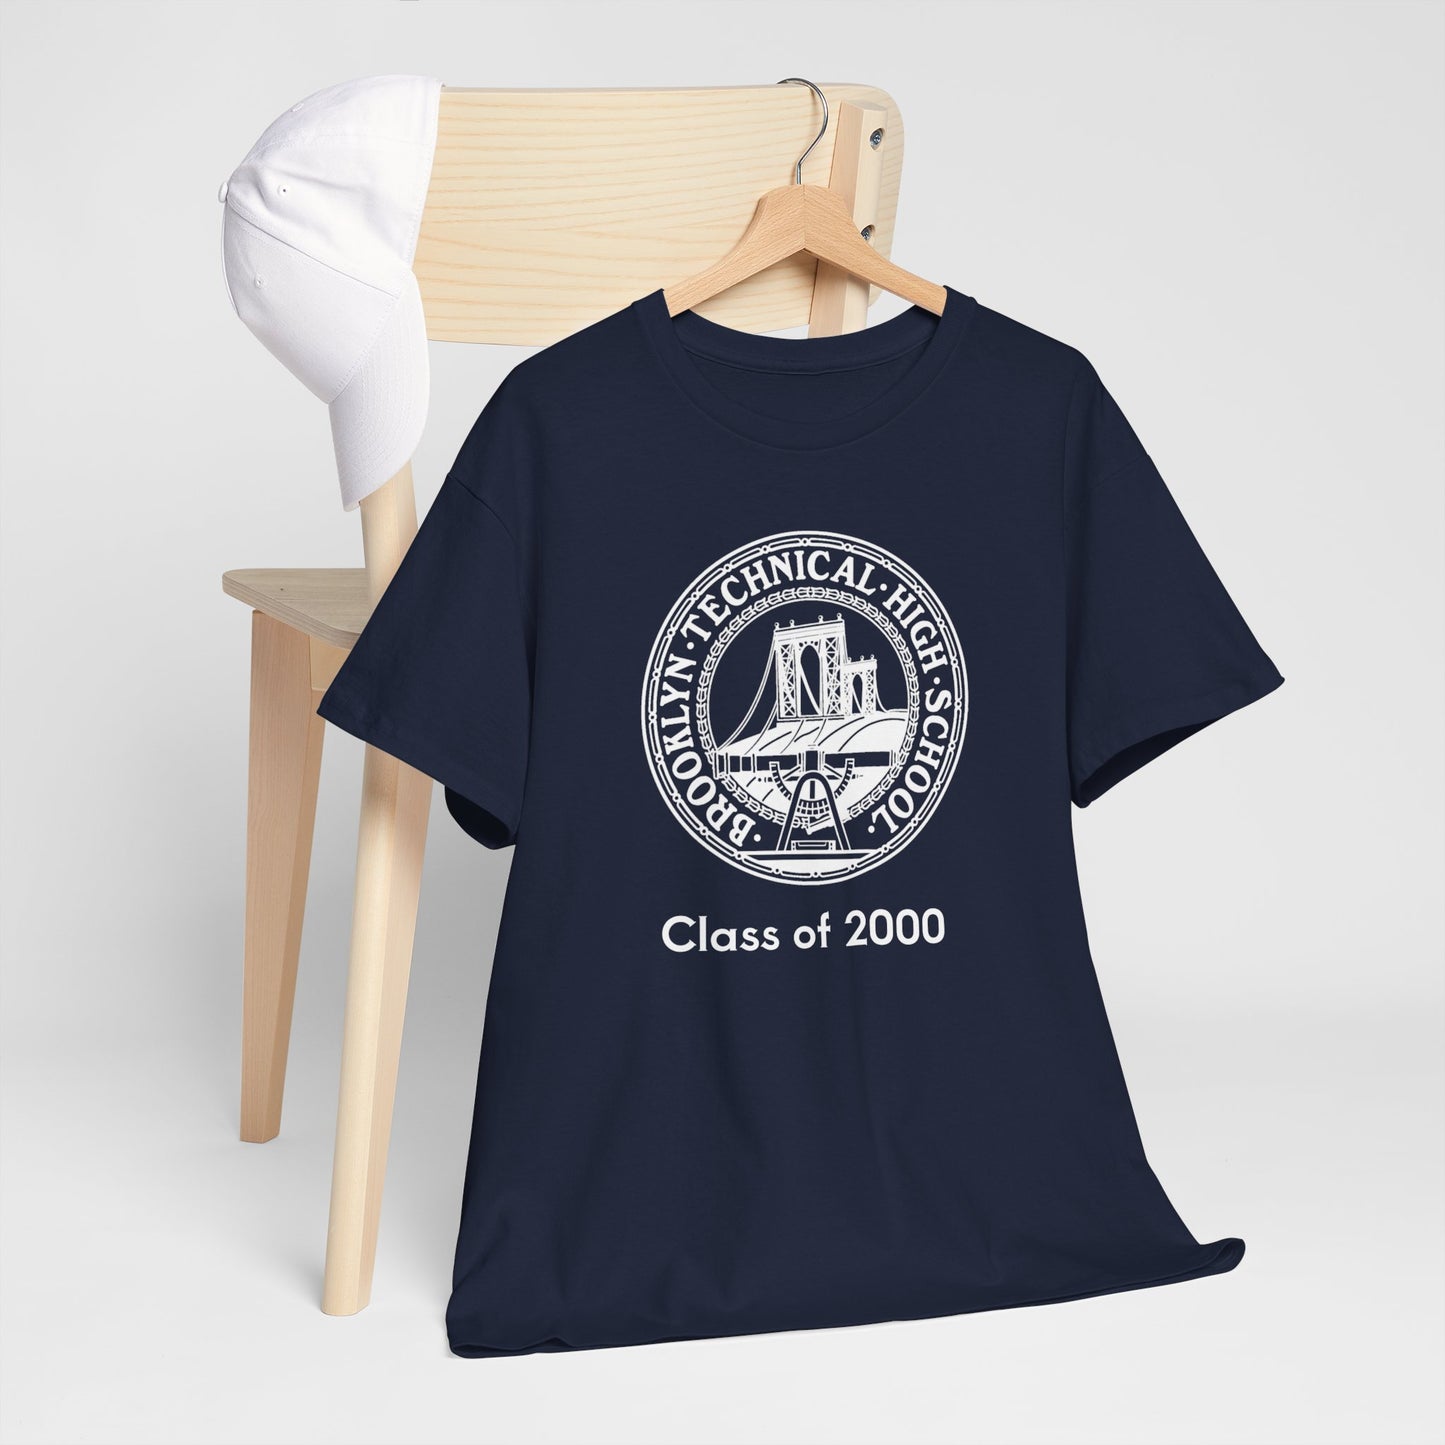 Classic Tech Seal - Men's Heavy Cotton T-Shirt - Class Of 2000